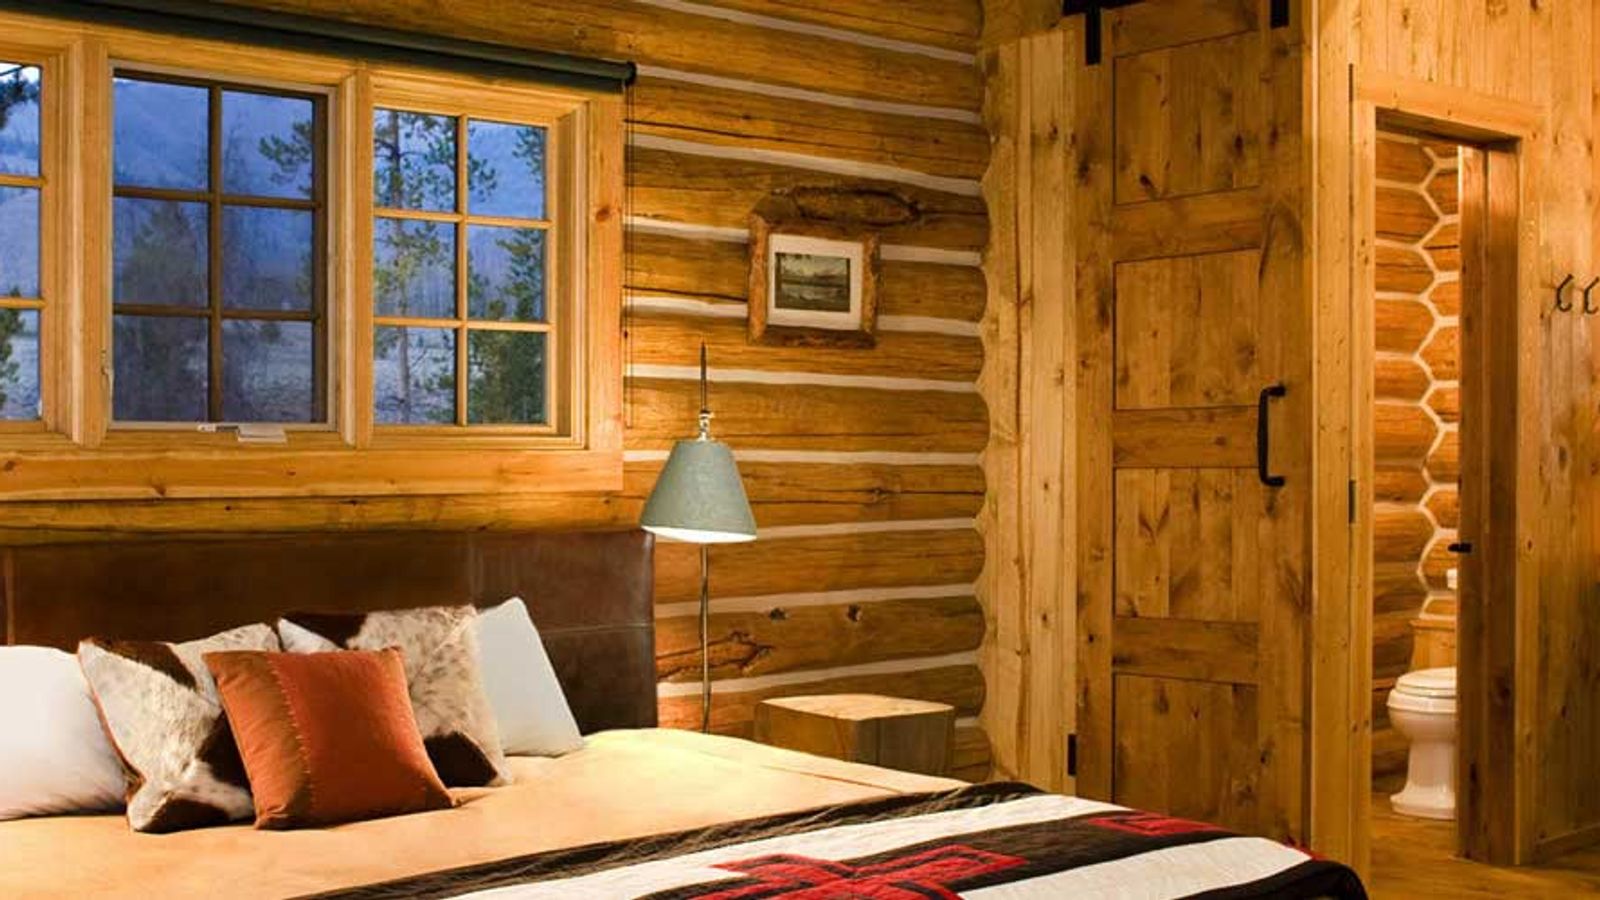 A cozy cabin bedroom